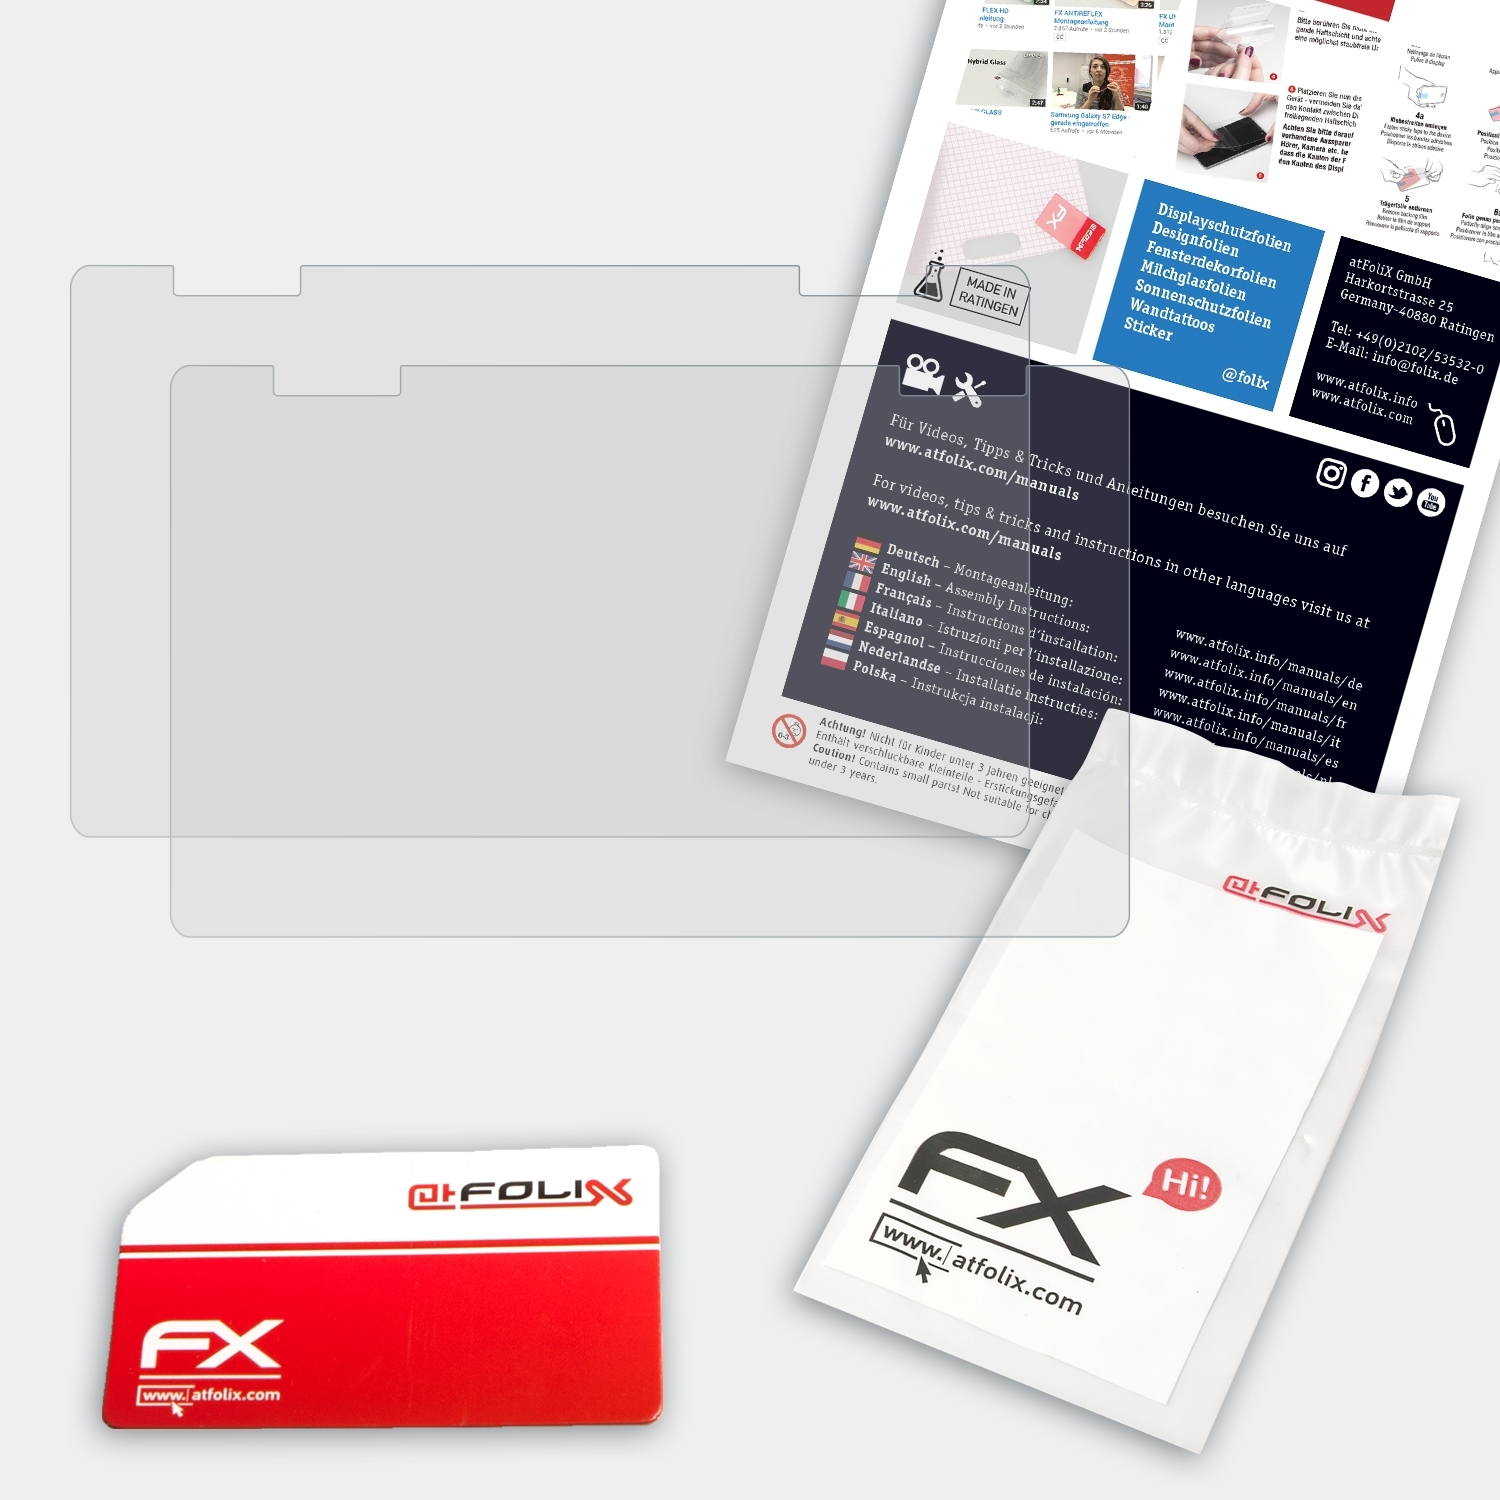 OneMix) FX-Antireflex ATFOLIX 2x Displayschutz(für One-Netbook